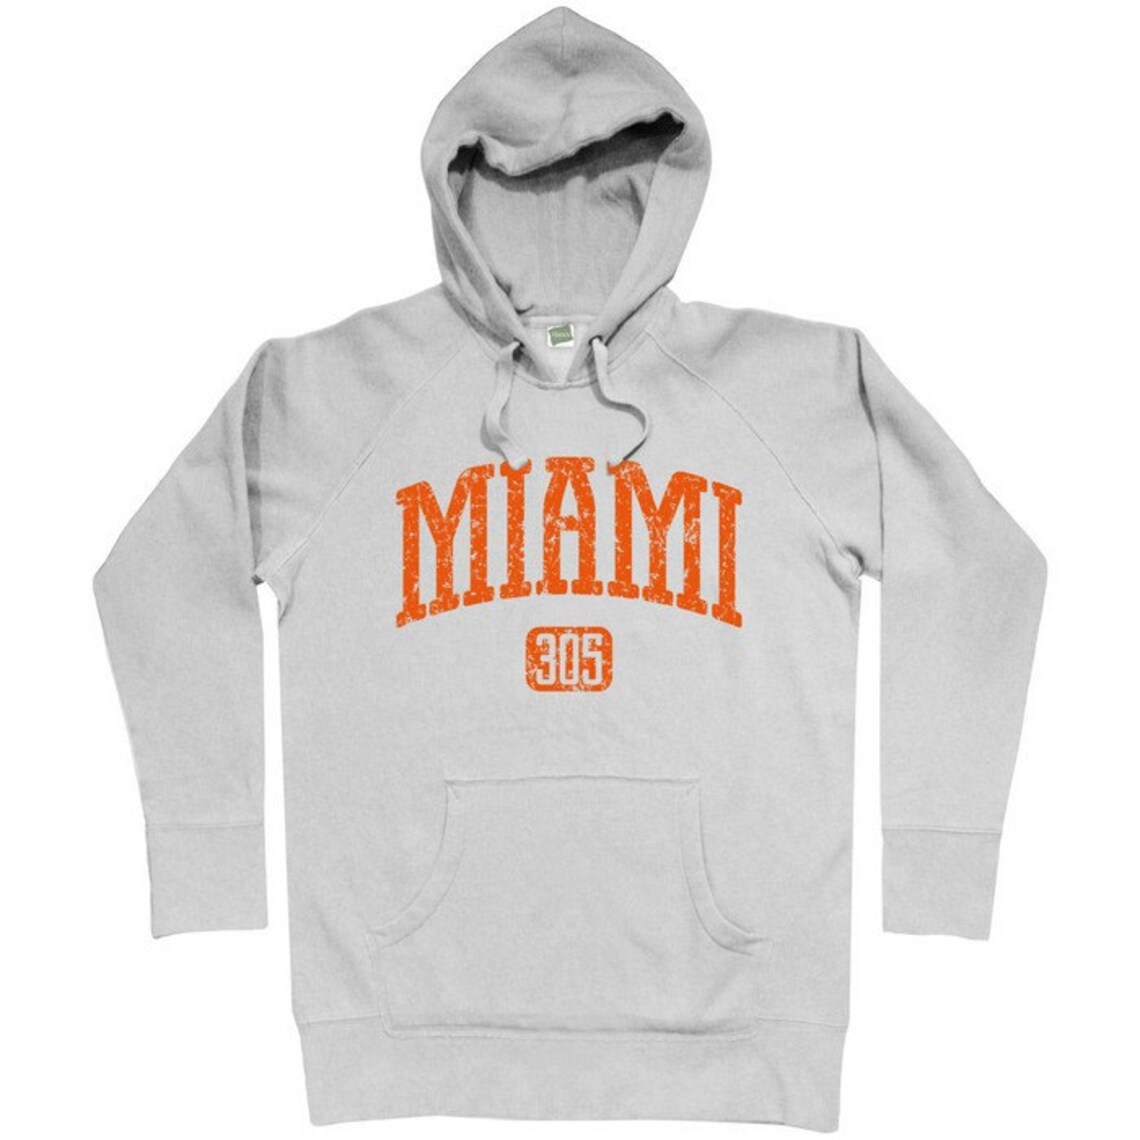 Miami 305 Hoodie Men S M L XL 2x Miami Hoody Sweatshirt - Etsy